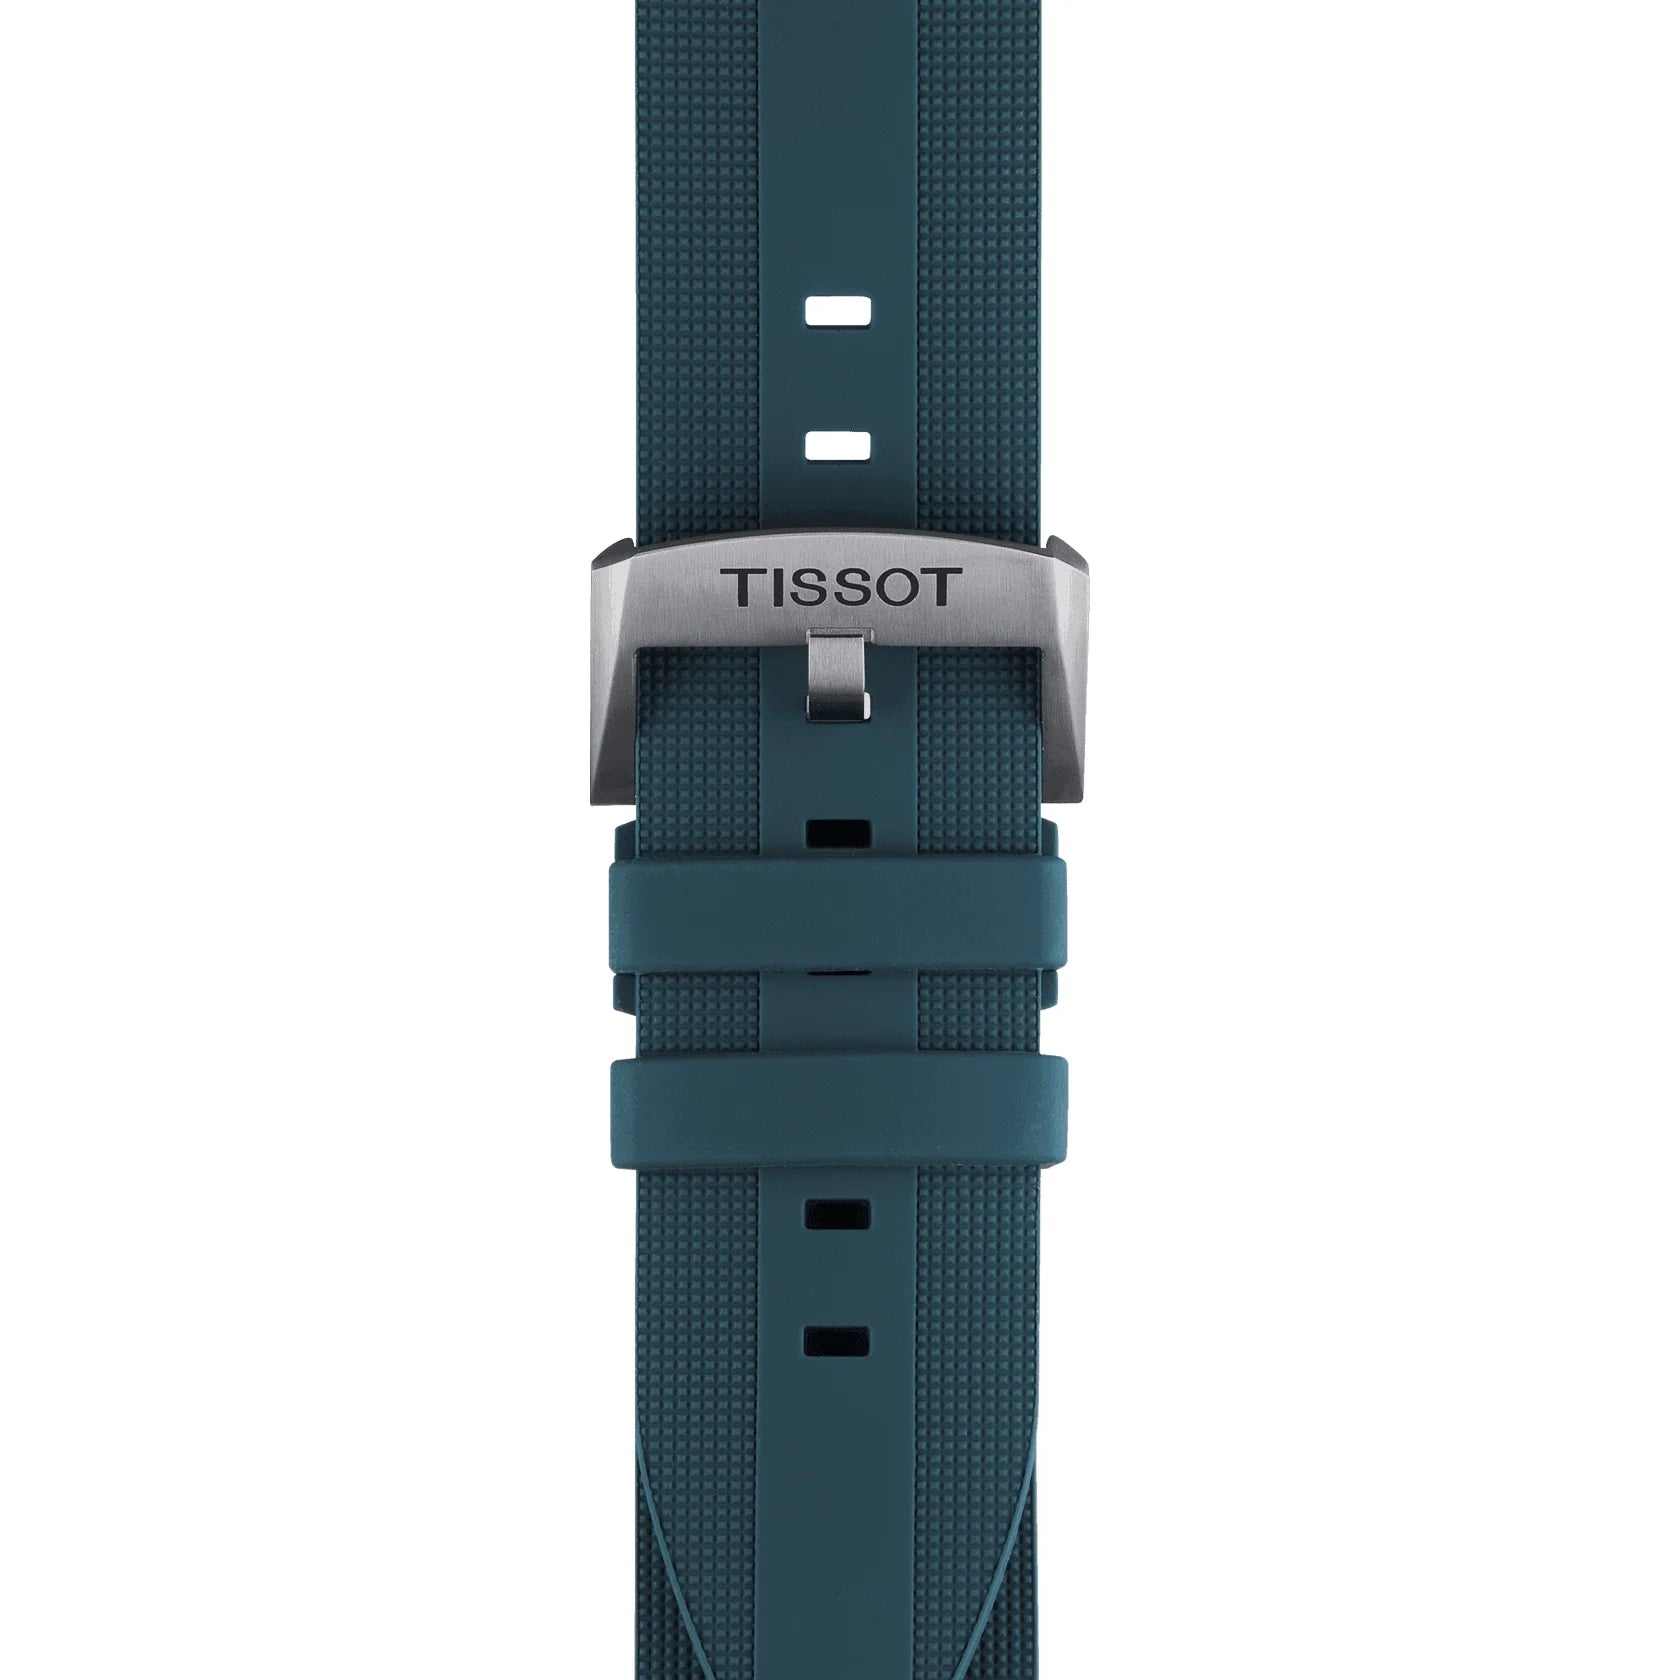 Tissot T-Touch Expert Solar II Herrenarmbanduhr mit Silikon armband und Blau Zifferblatt. Es hat 12 Funktionen und ist hochfunktional. Kostenloser Versand.